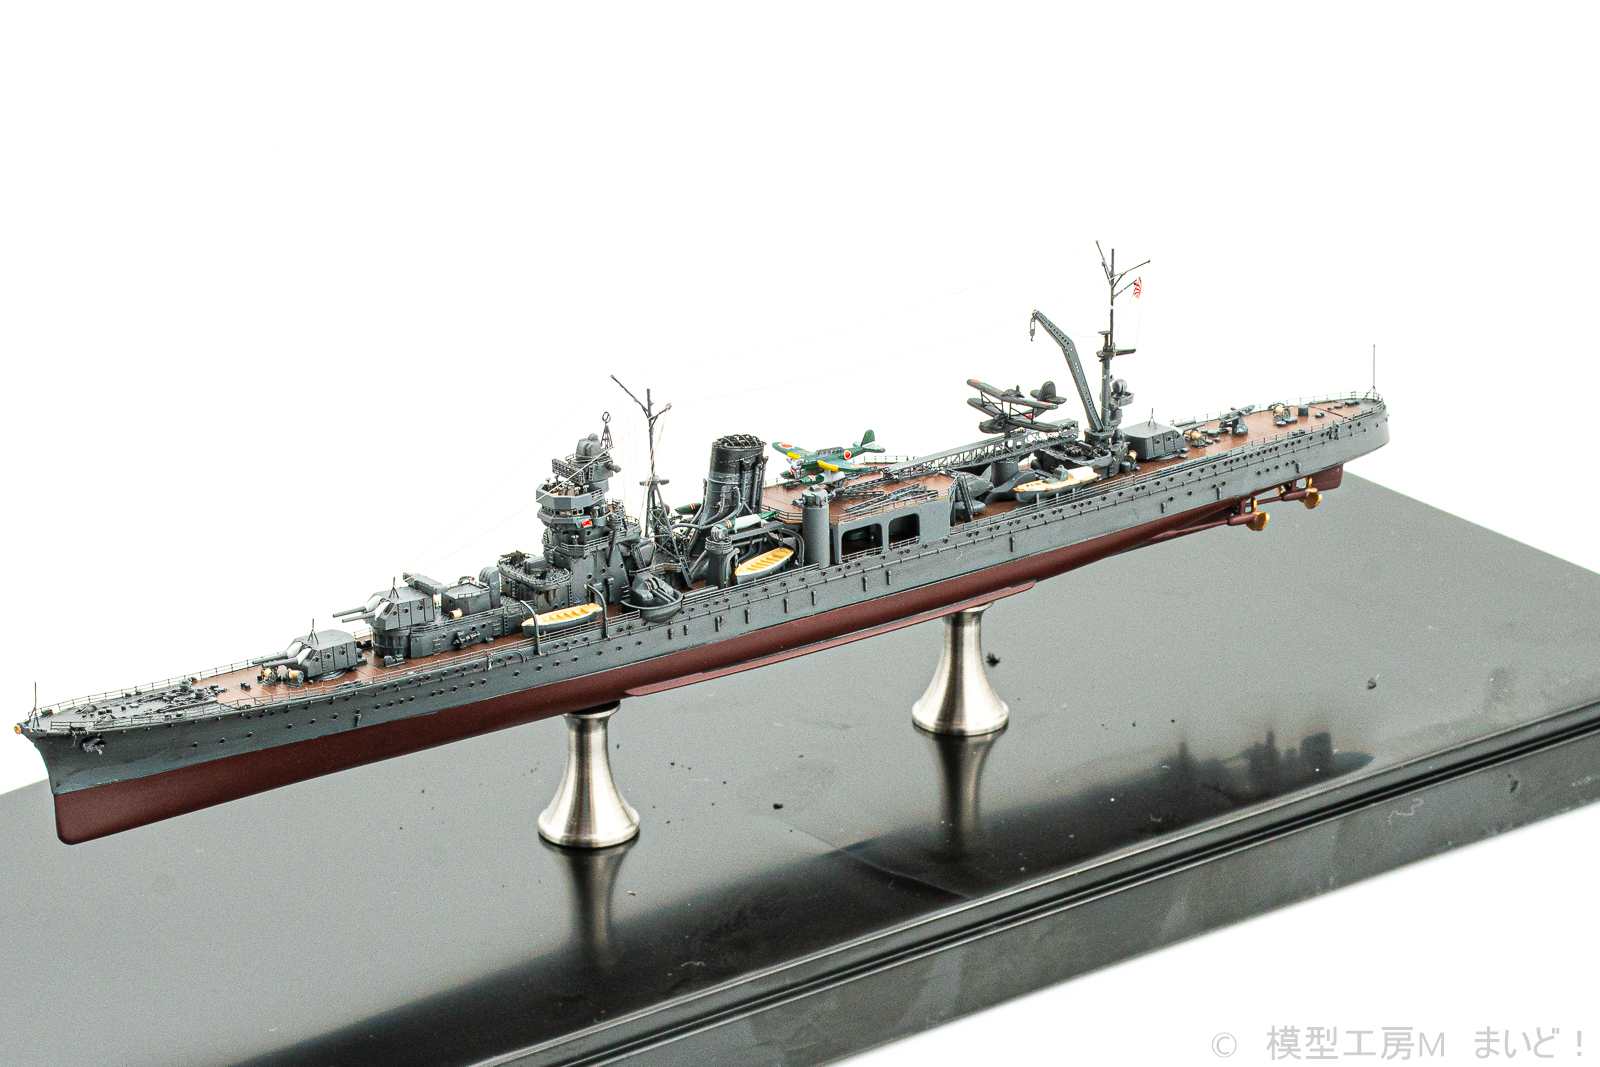 フジミ 1/700 日本海軍軽巡洋艦「阿賀野」1943 フルハル 完成